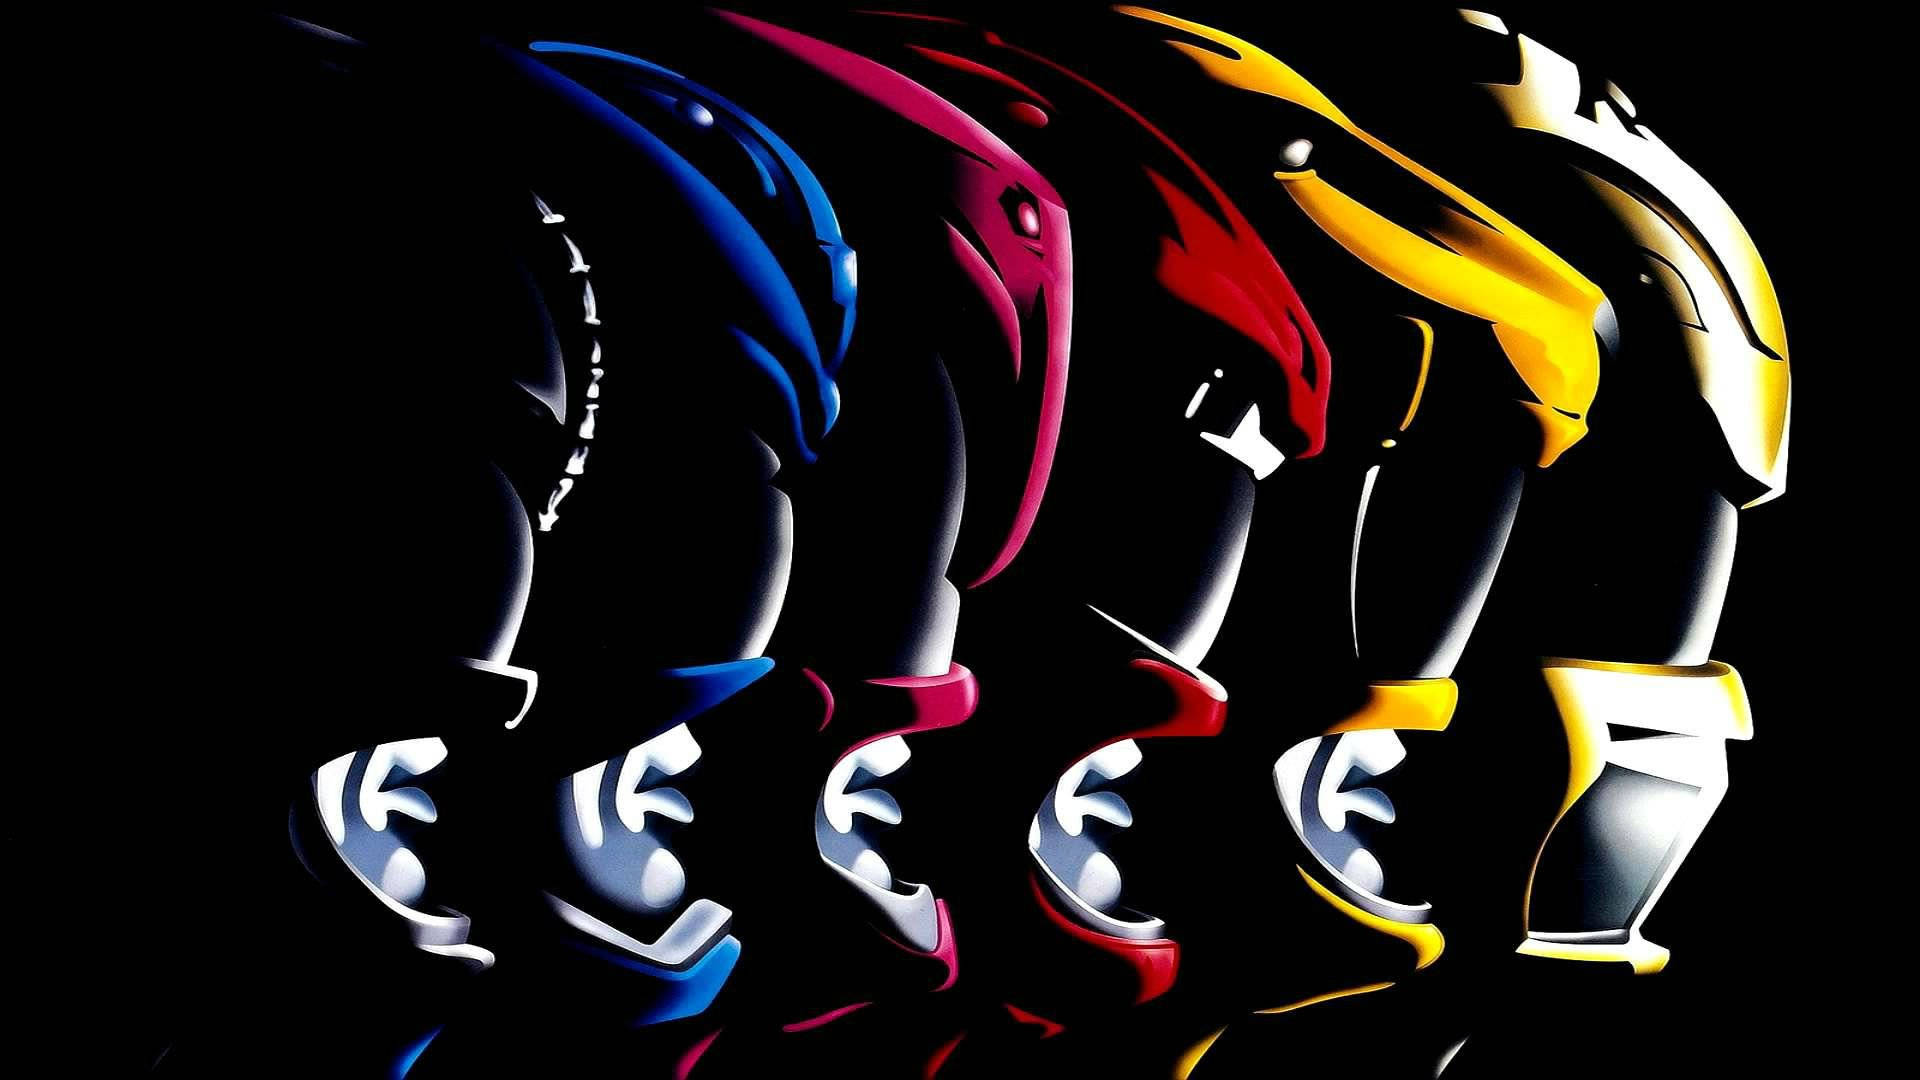 Aesthetic Power Rangers Wallpaper